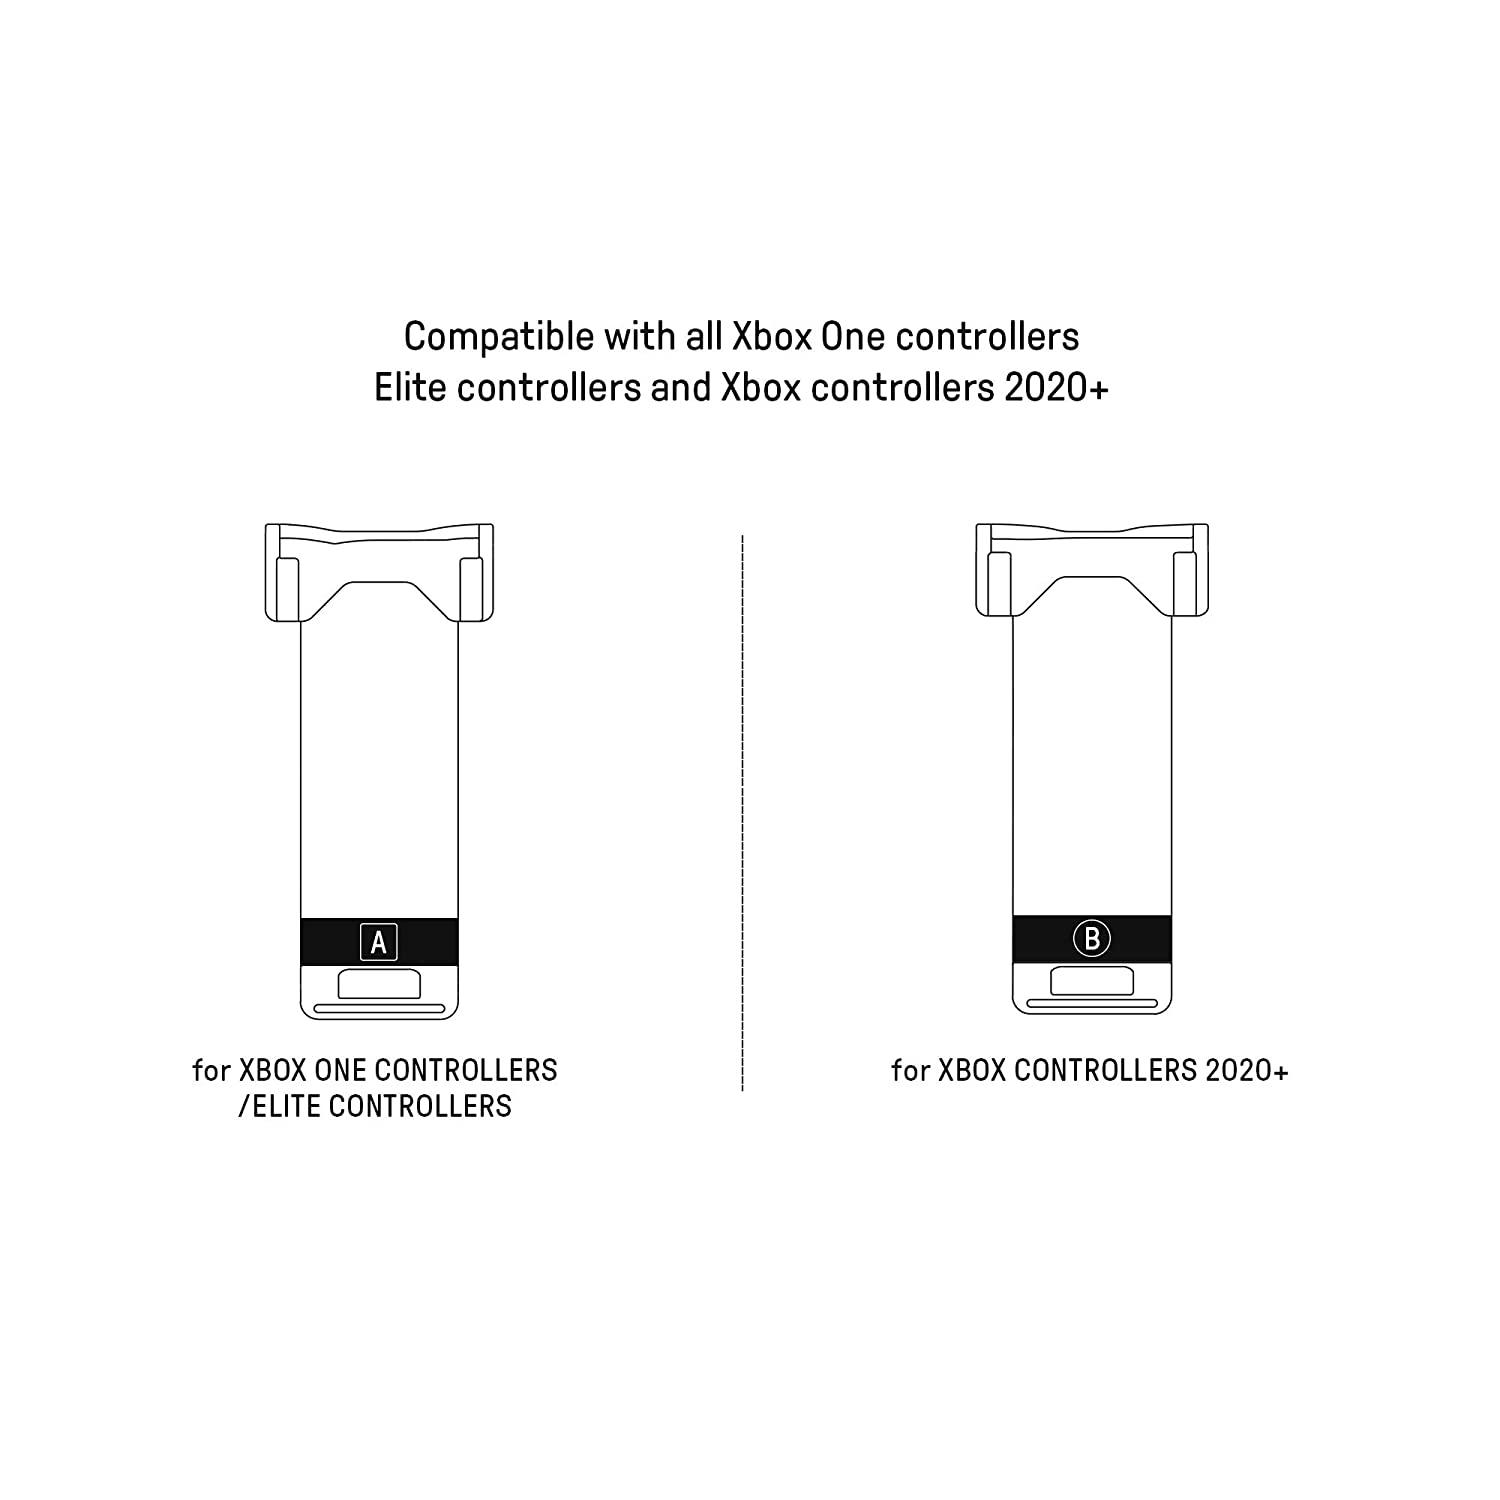 Soporte de móvil ajustable 8bitDo para mando Xbox One y Xbox Elite